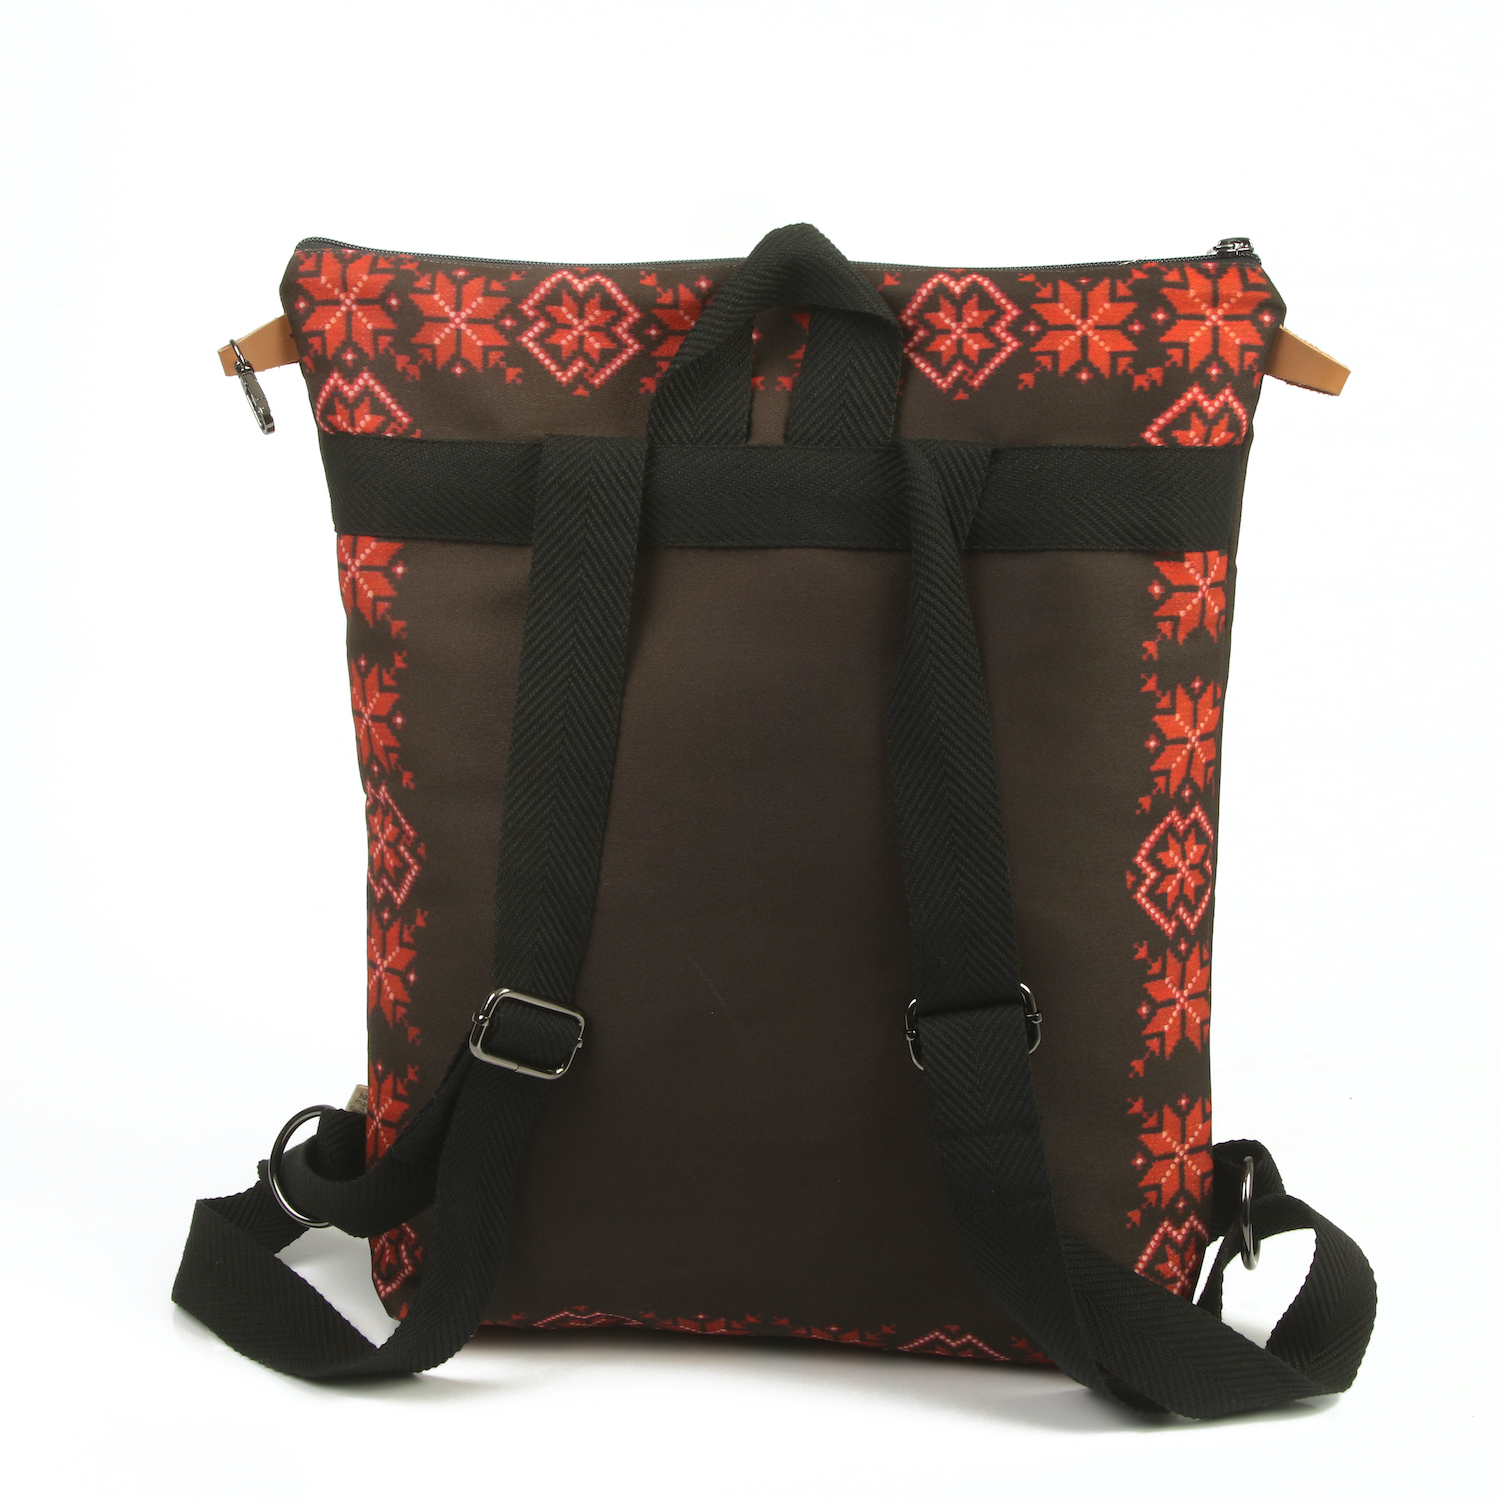 LazyDayz Designs Backpack γυναικείος σάκος πλάτης χειροποίητος bb0507c